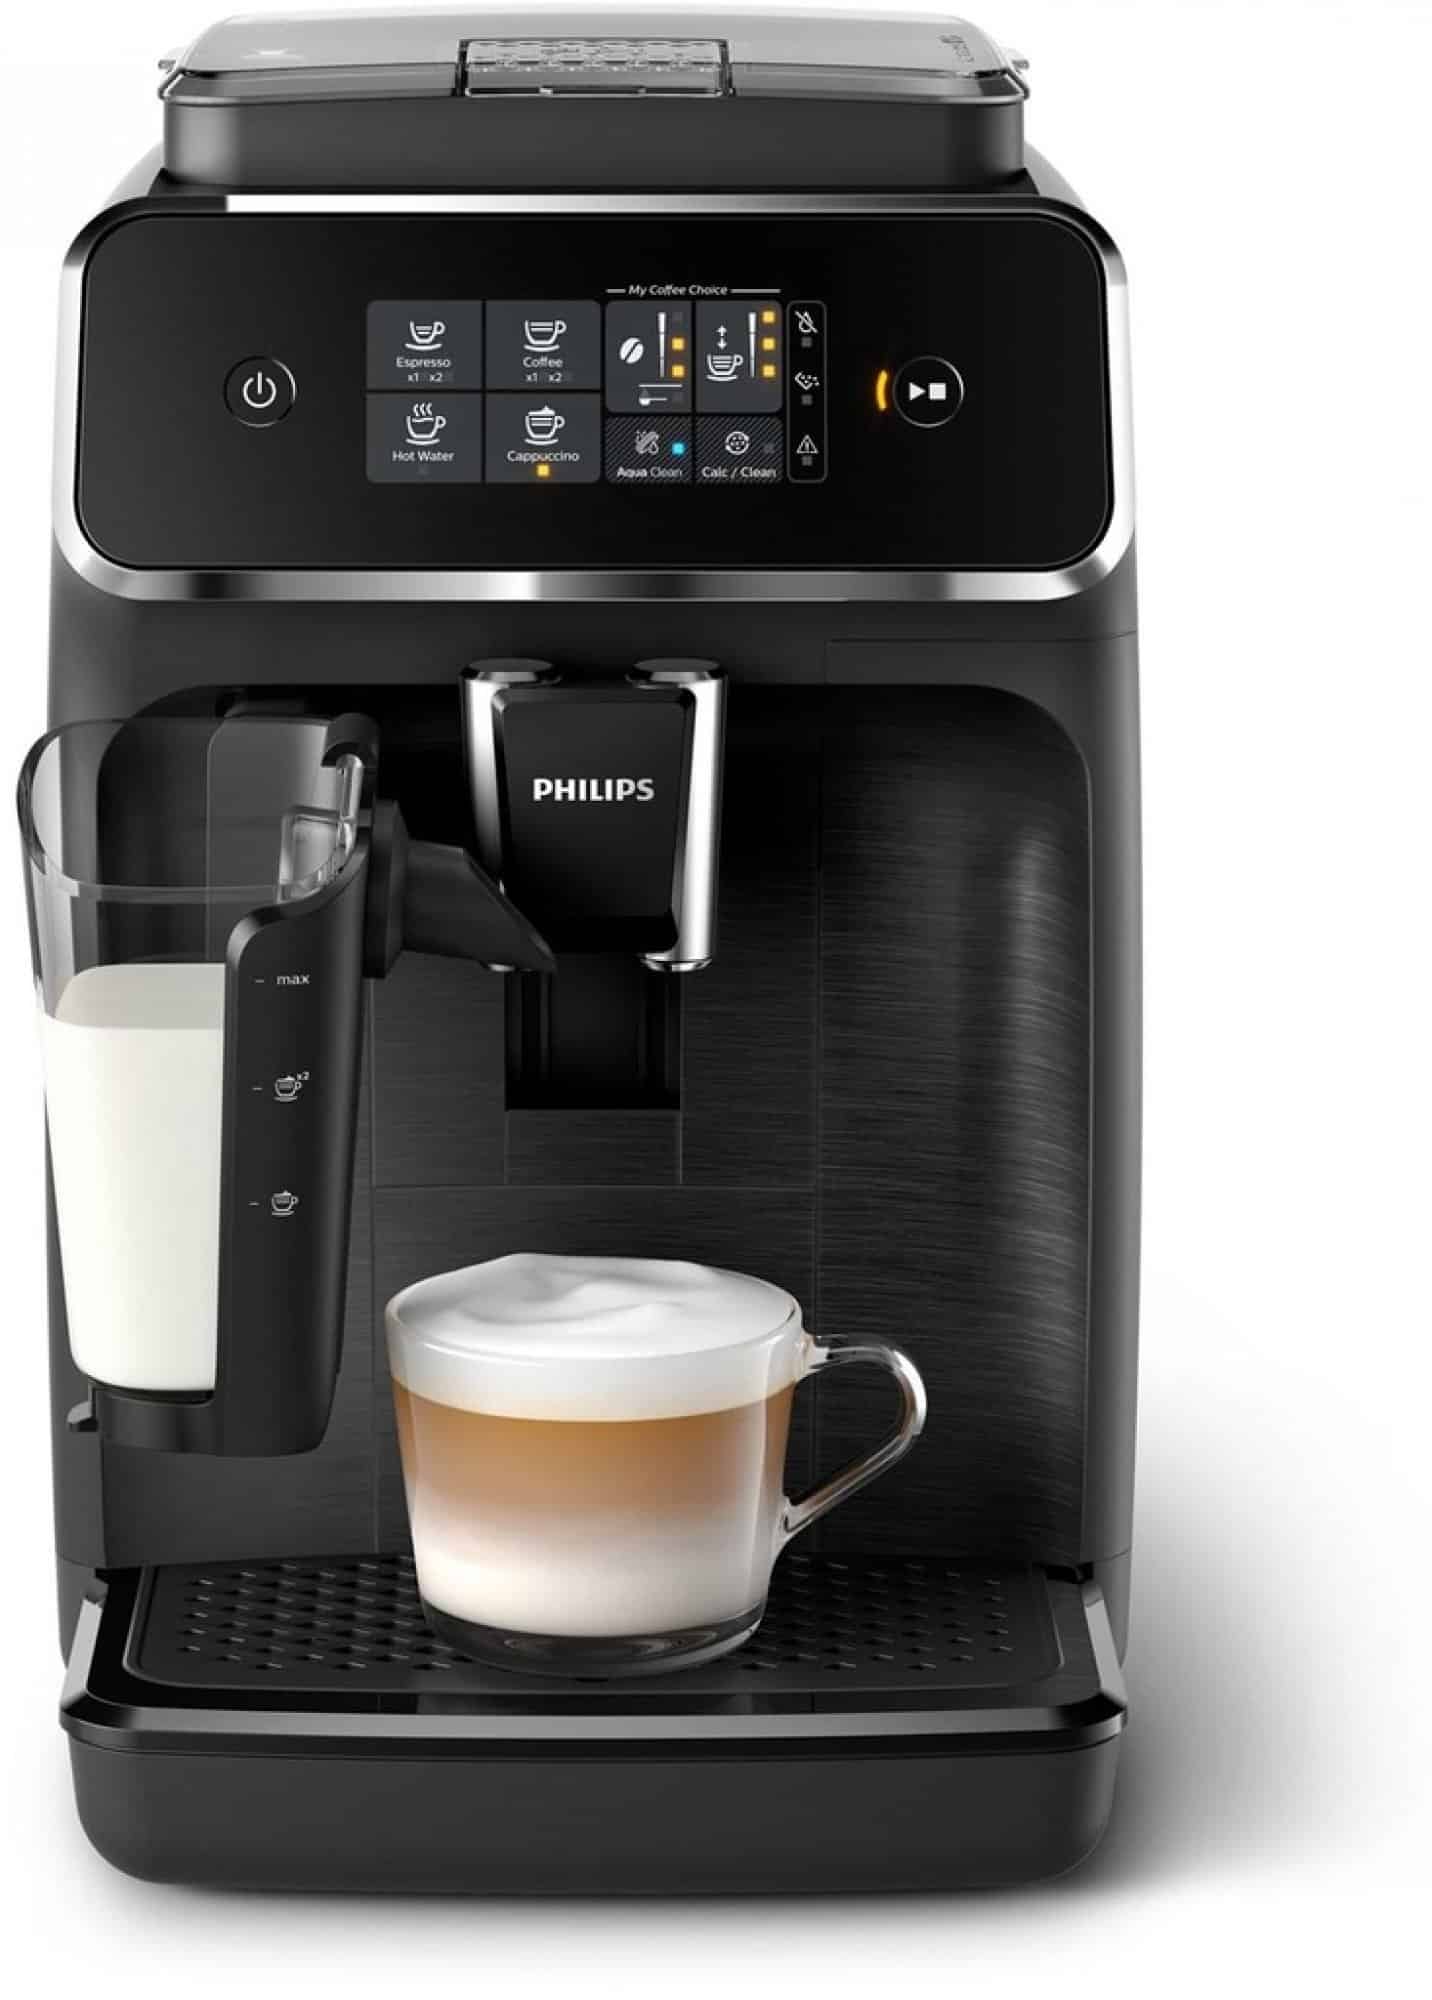 Automatický kávovar s jednoduchým ovládáním i údržbou Philips.